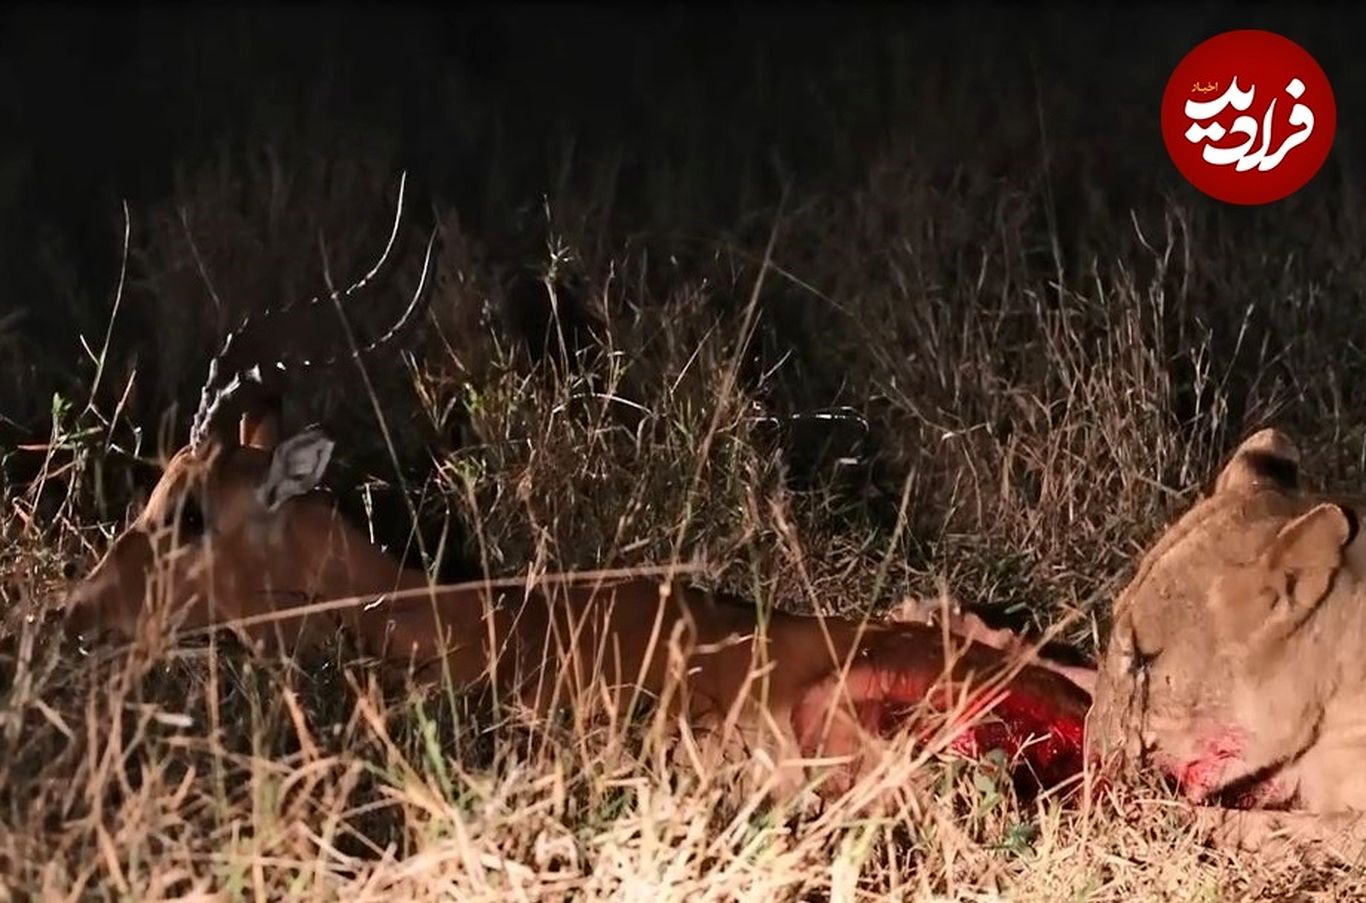 (ویدئو) زنده خوری تکان دهنده ایمپالا توسط شیر